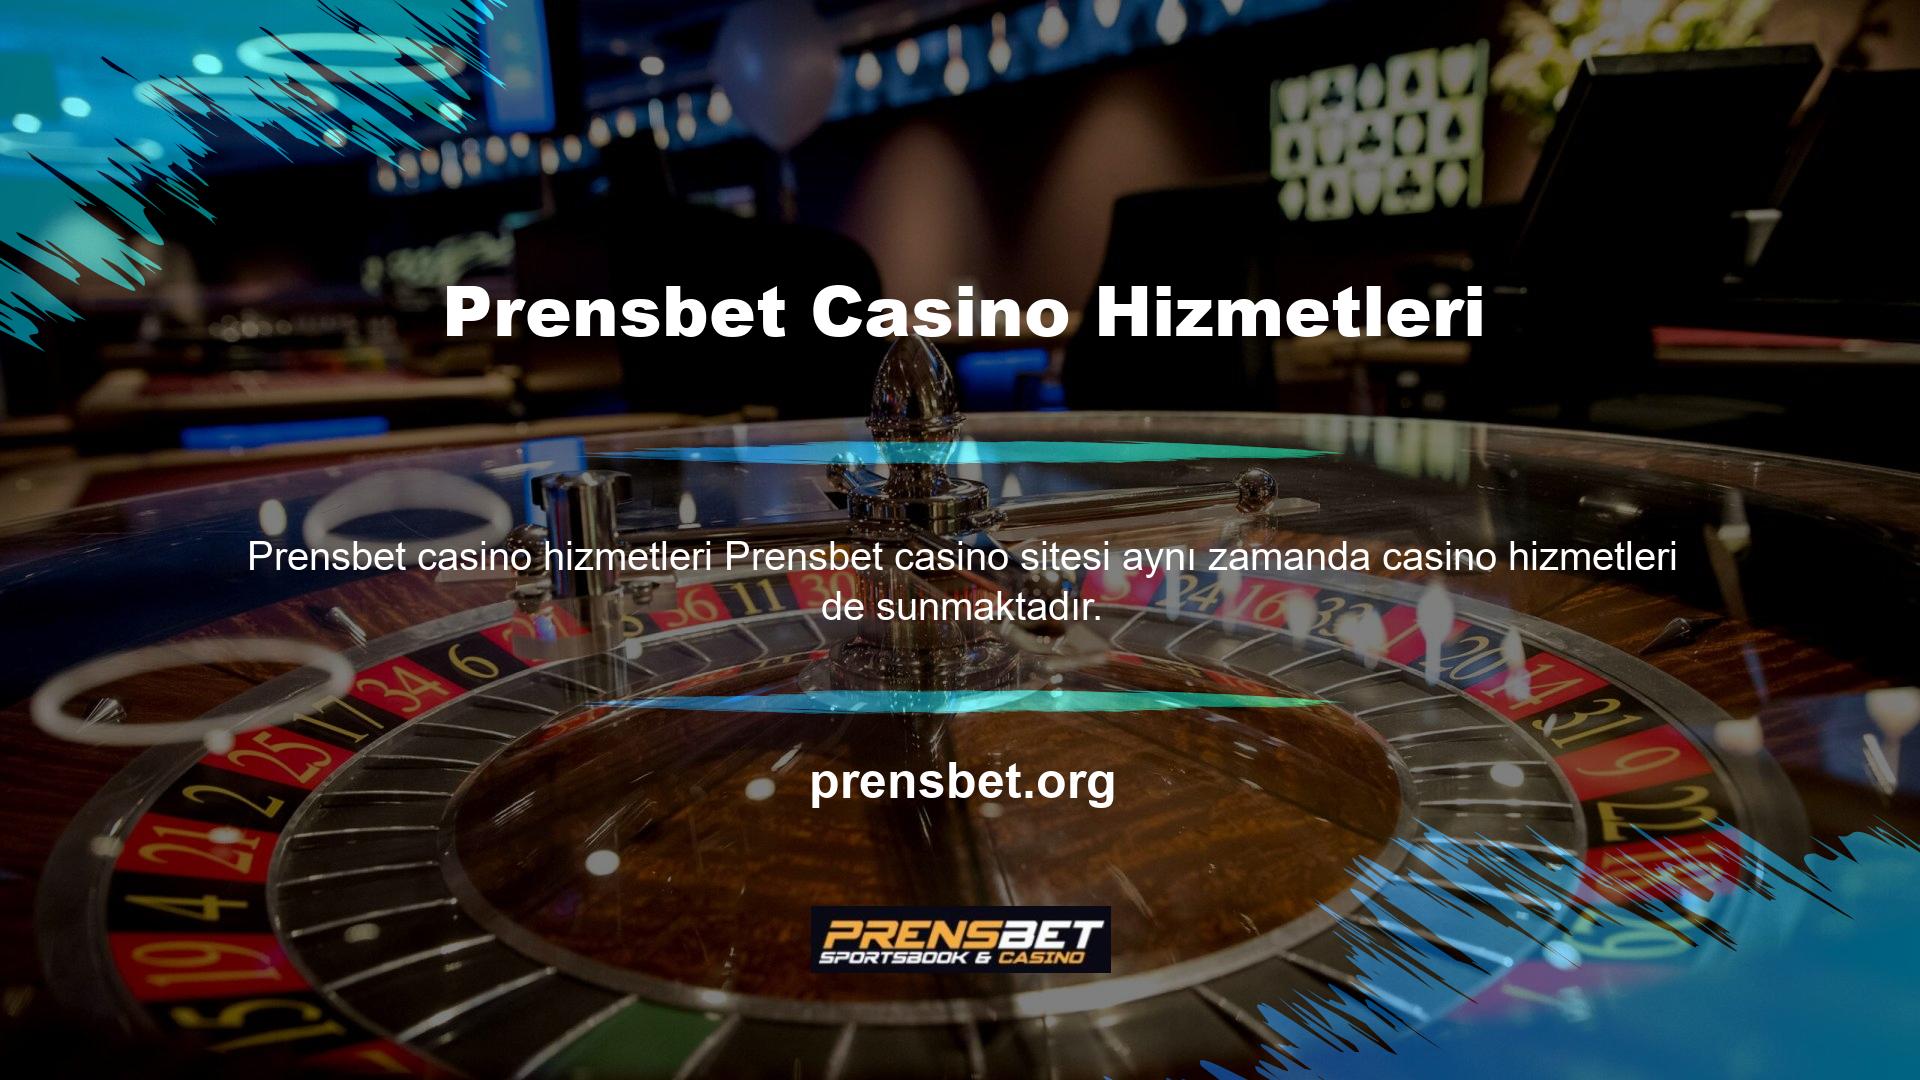 Türkiye'de casino oyunları oynamak isteyen herkes Prensbet web sitesine üyelik oluşturarak güncel giriş adresine ulaşarak favori oyunlarını oynayabilir